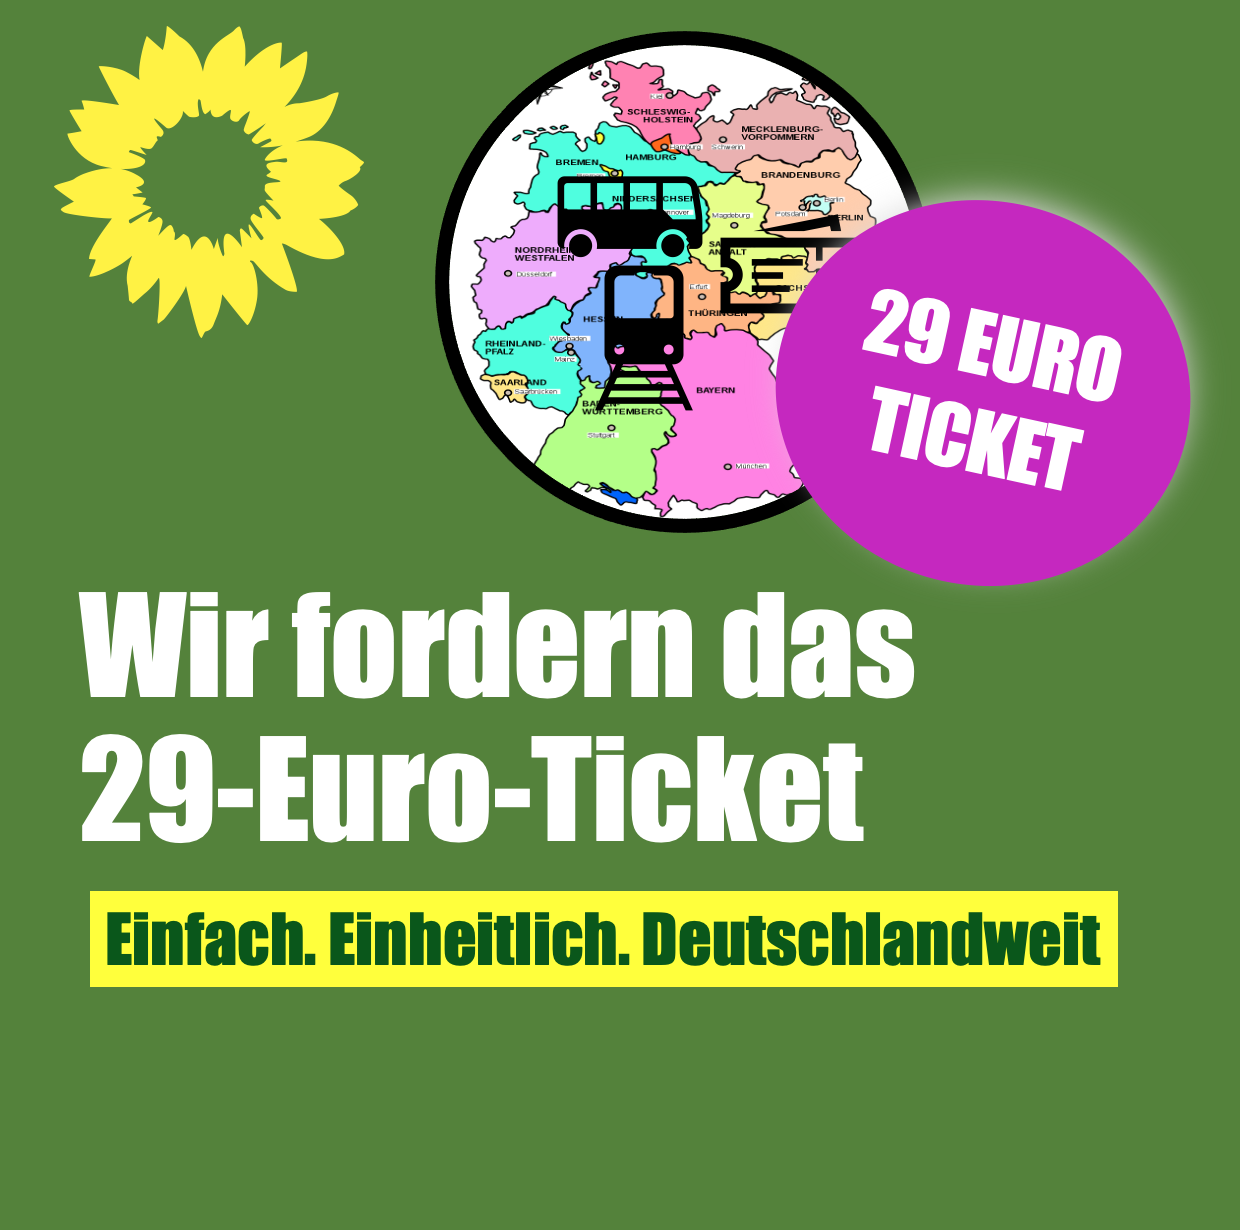 Das 29-Euro-Ticket. Einfach. Einheitlich. Deutschlandweit.